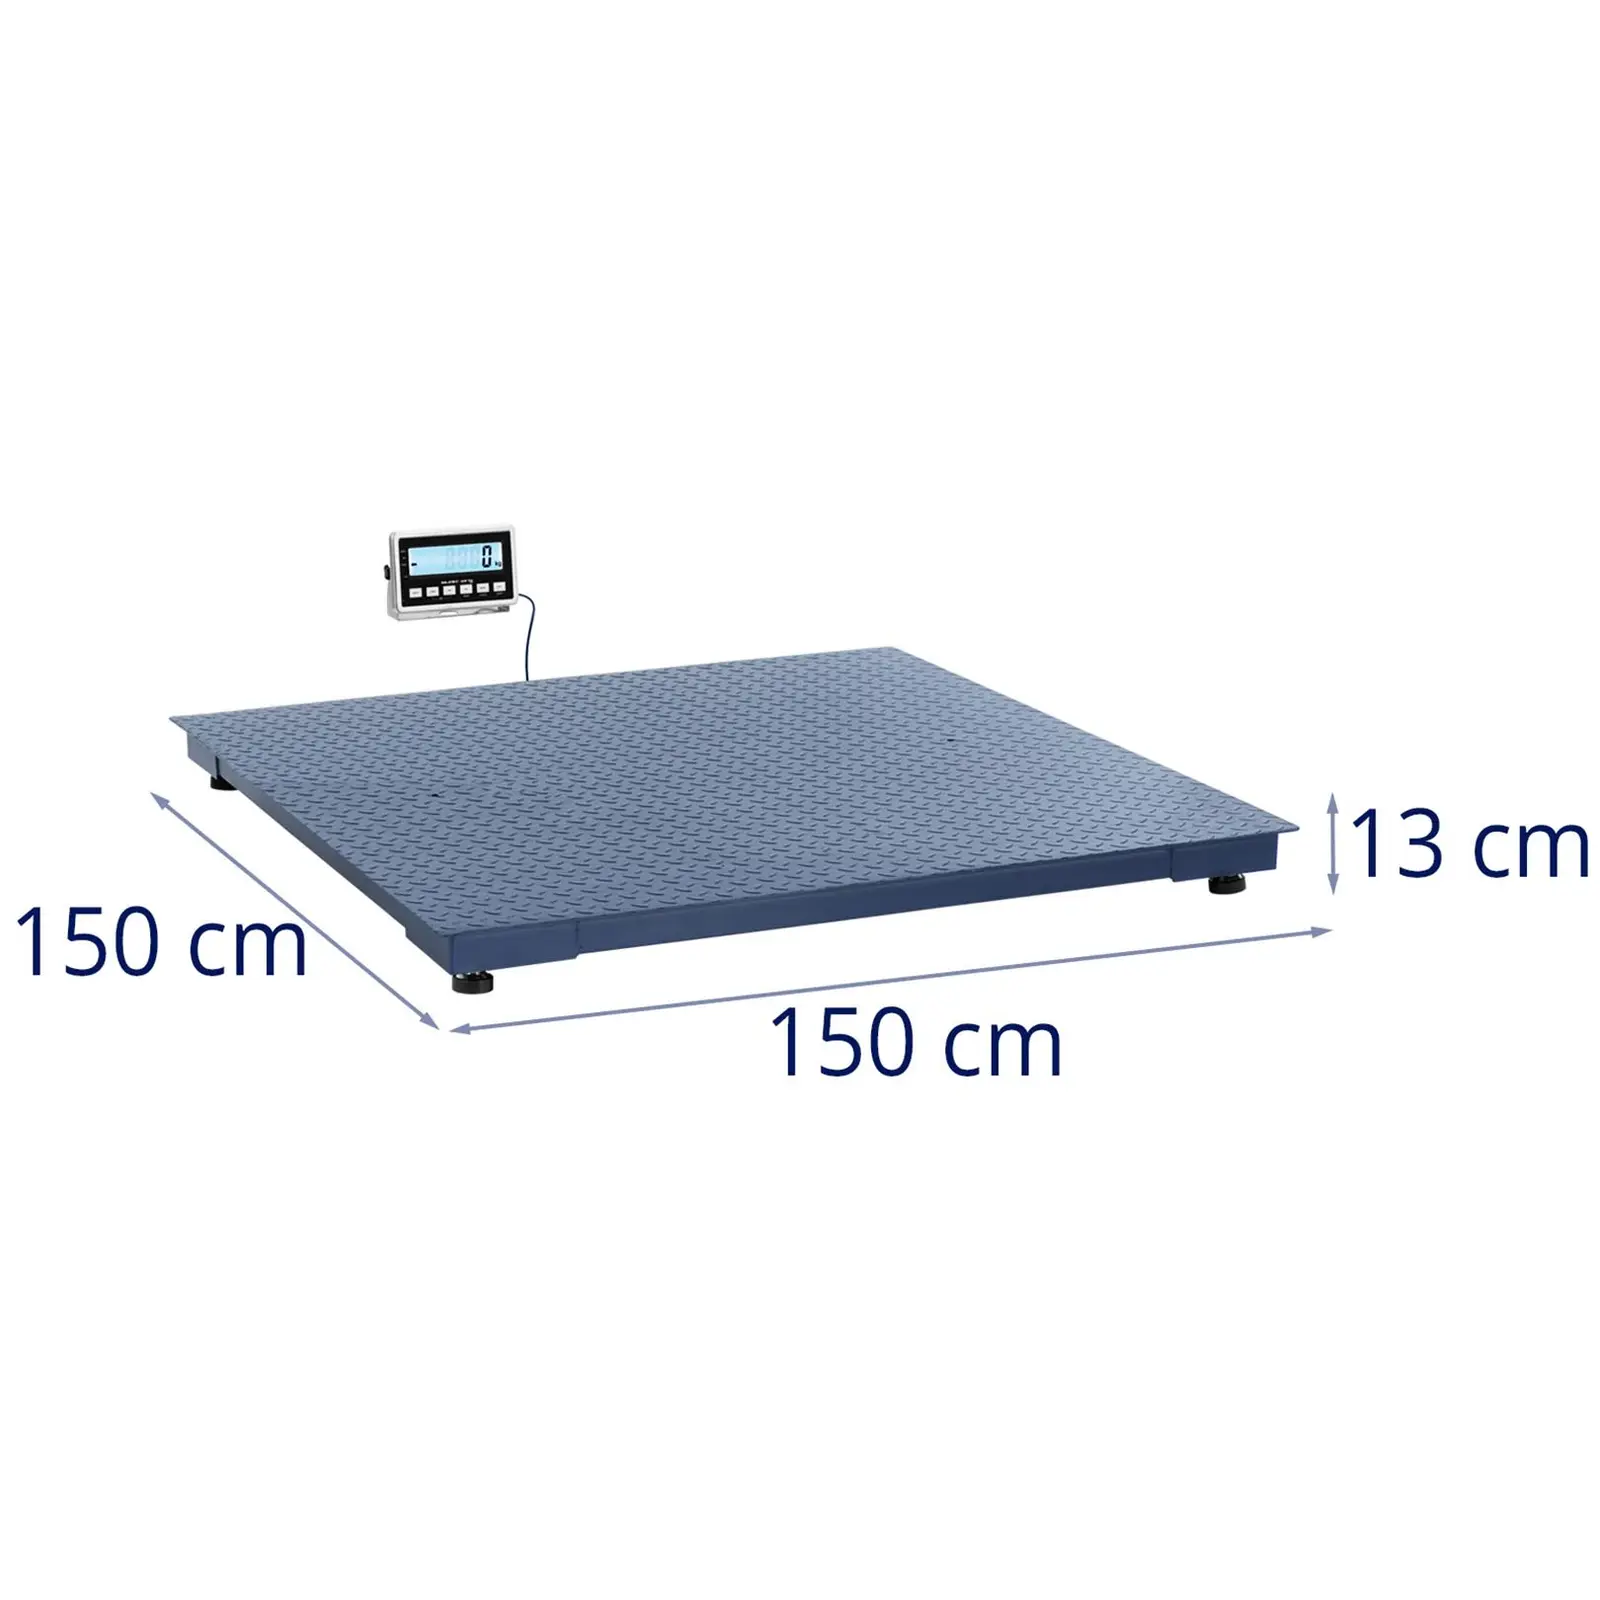 Talna tehtnica - 5000 kg / 2 kg - 1500 x 1500 mm - LCD